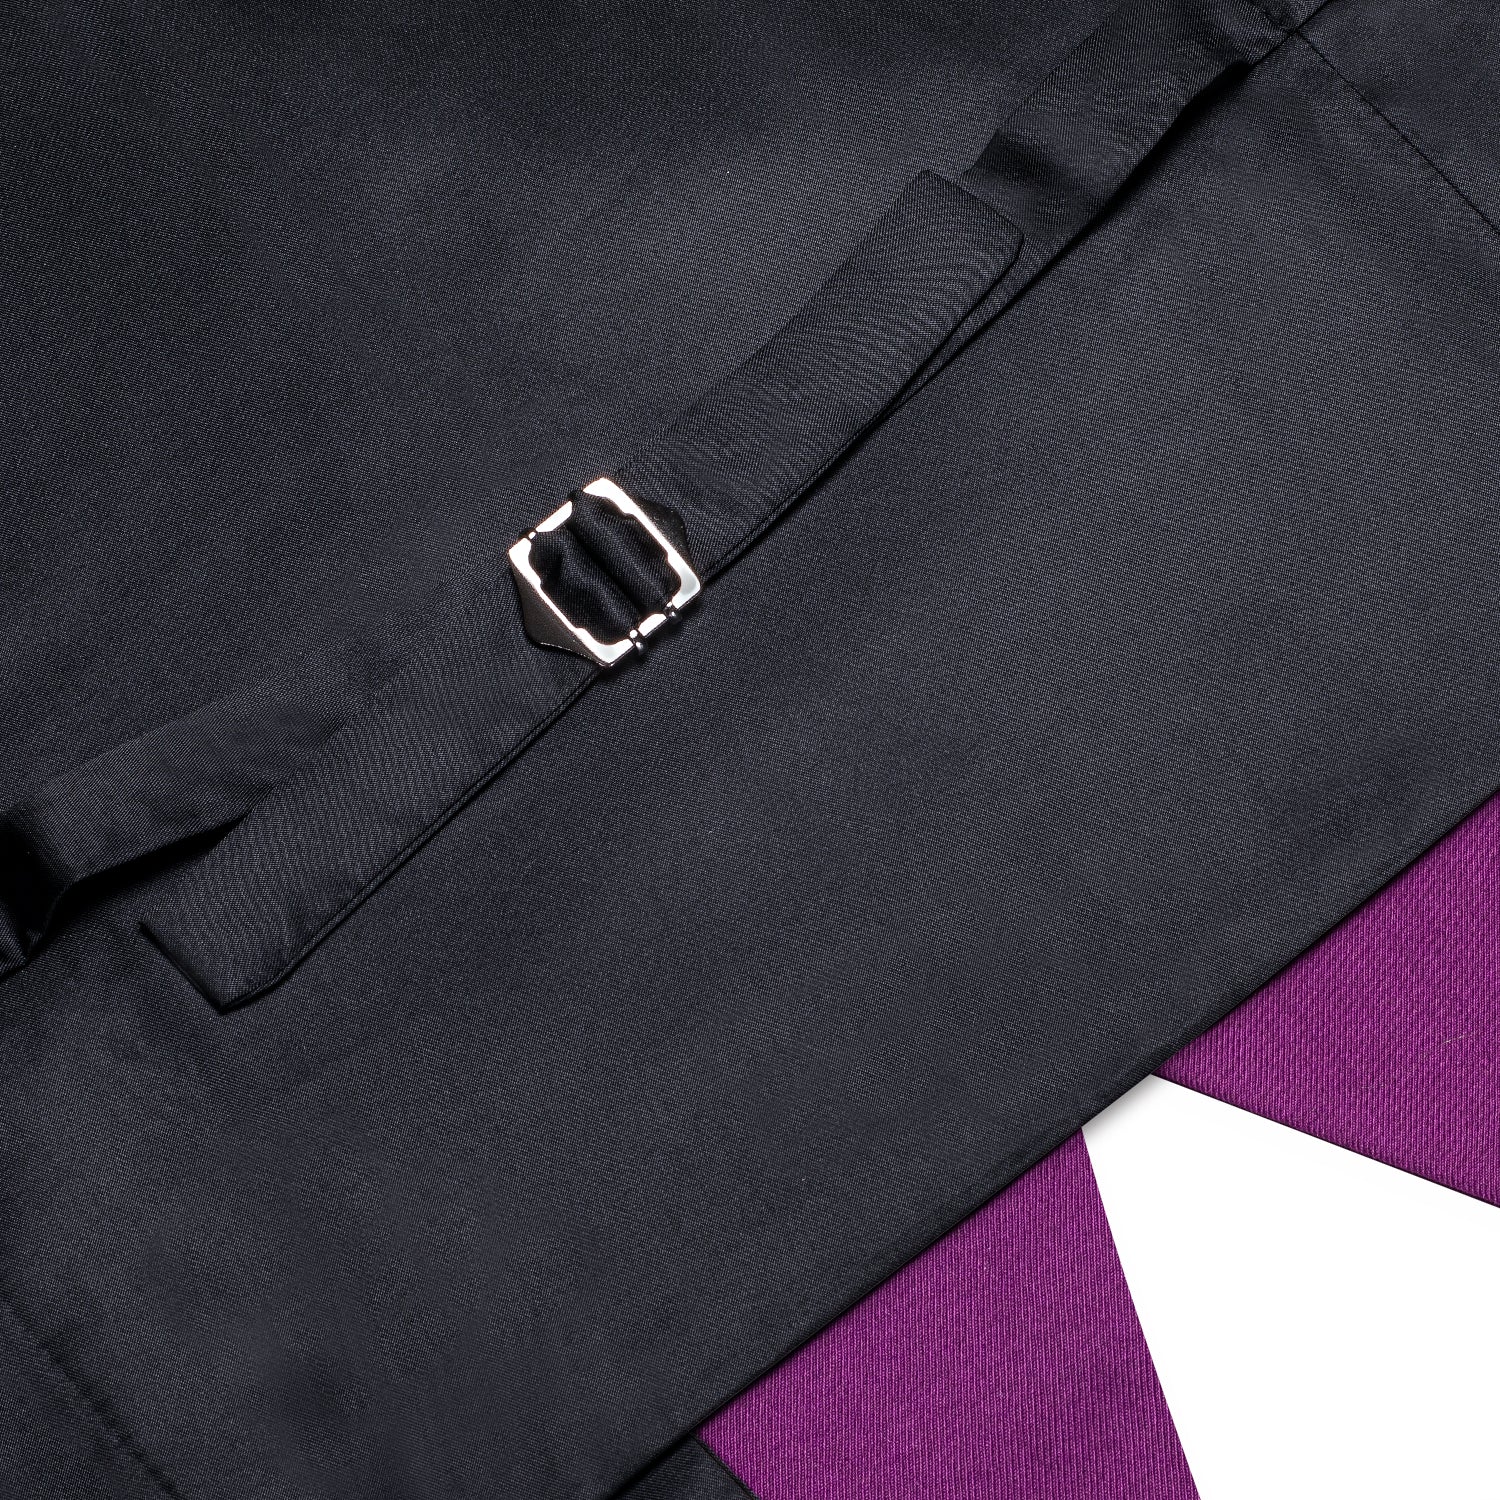 Purple Solid Silk Men's Single Vest Waistcoat